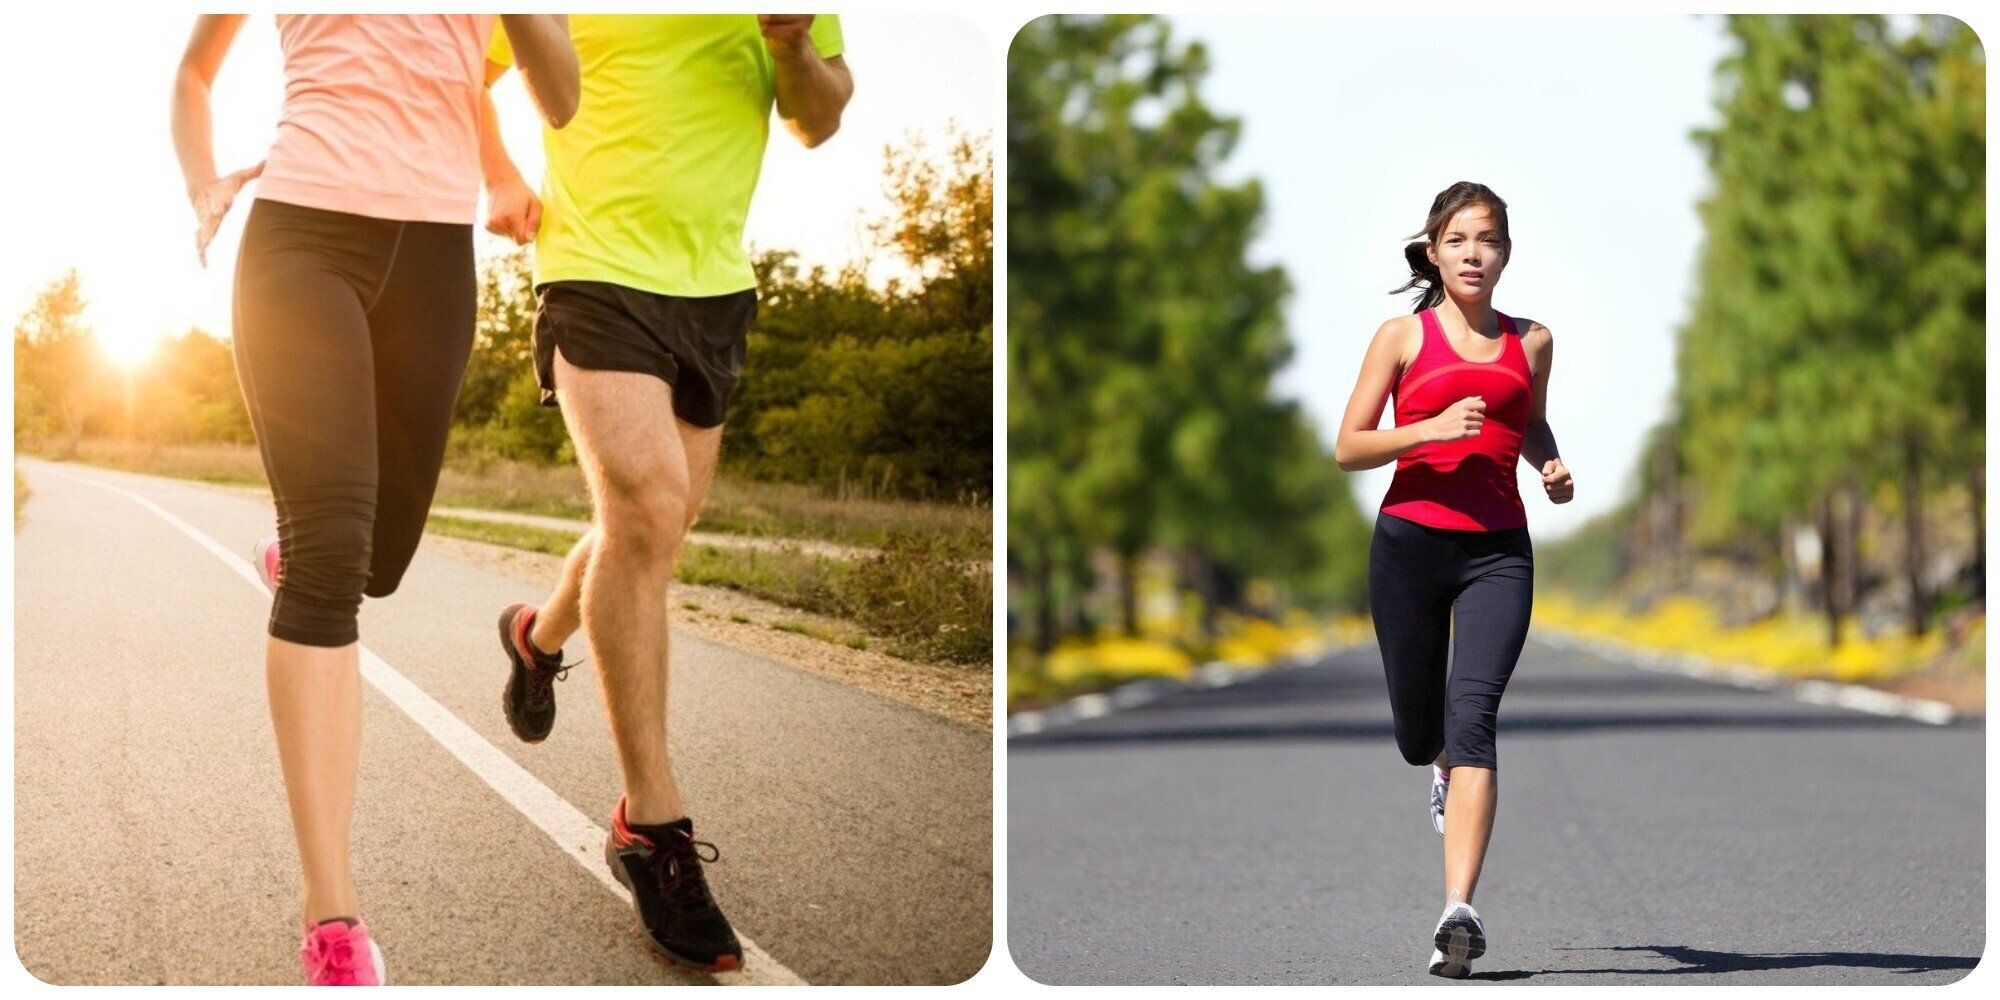 Chạy bộ đúng cách sẽ giúp bạn khoẻ mạnh và có đôi chân thon gọn.